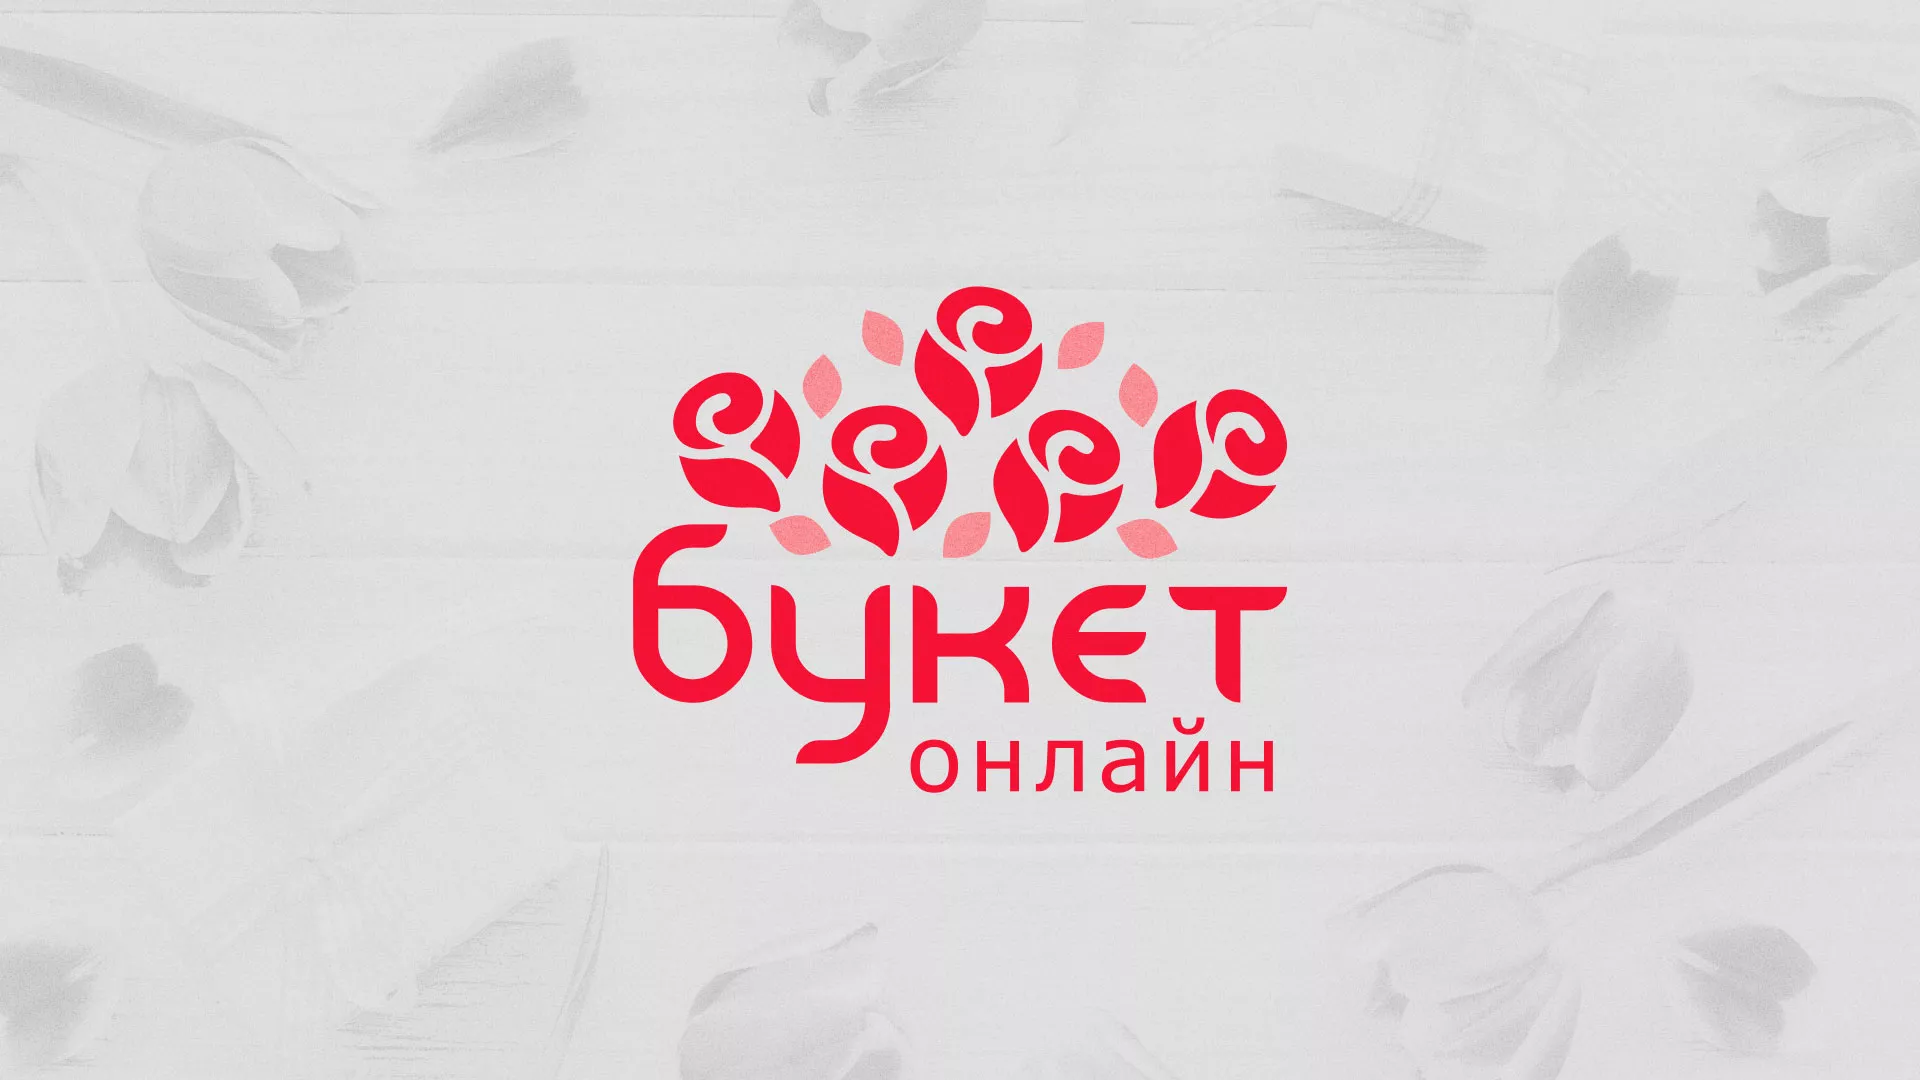 Создание интернет-магазина «Букет-онлайн» по цветам в Волчанске